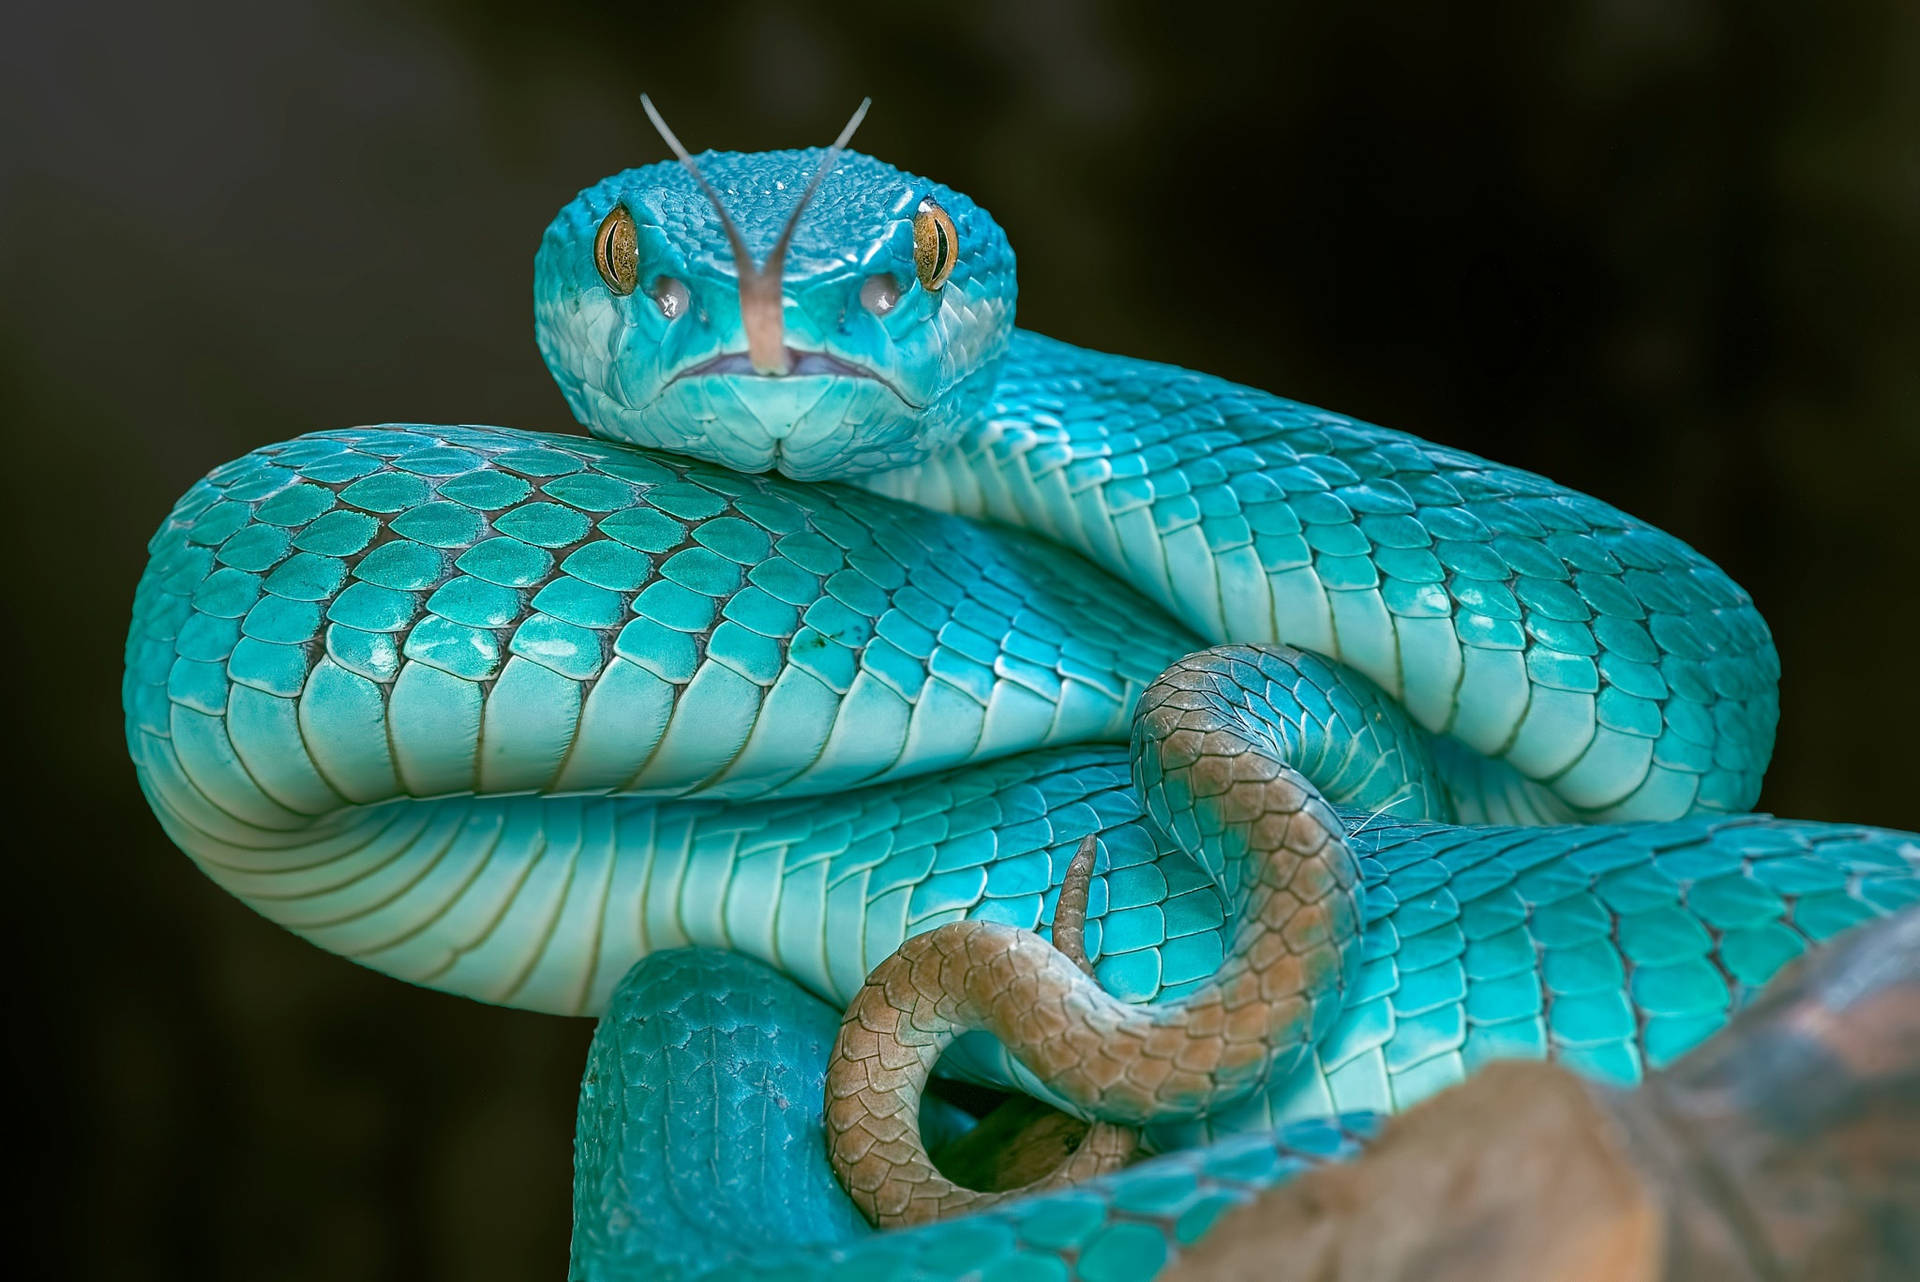 A Very Pretty Snake Background